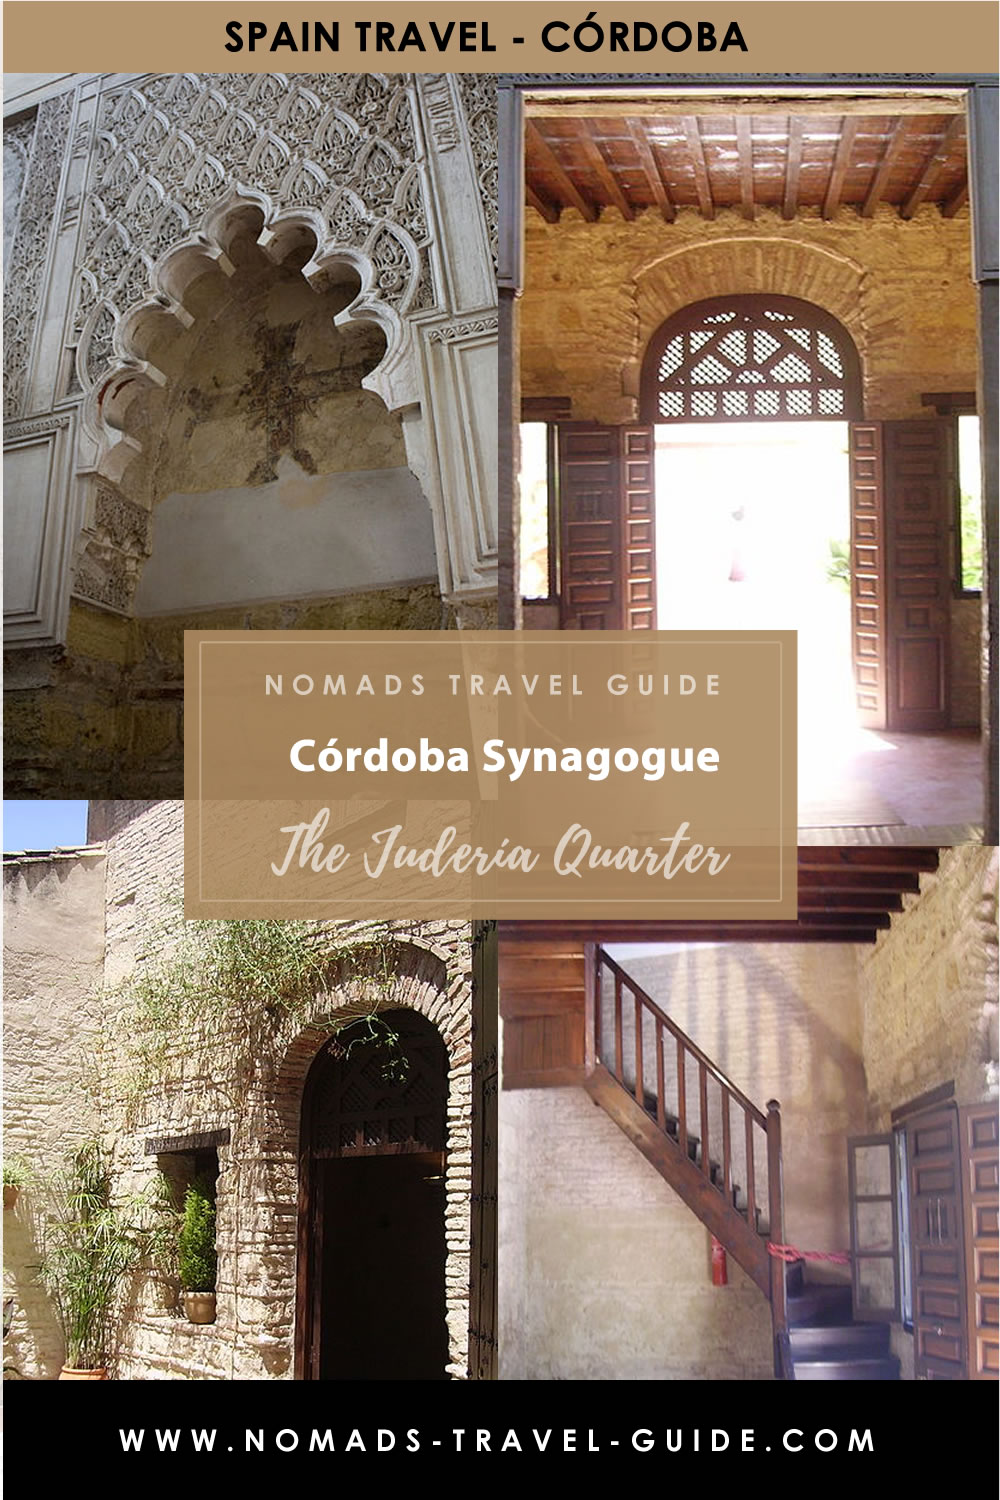 Guie To Cordoba Synagogue